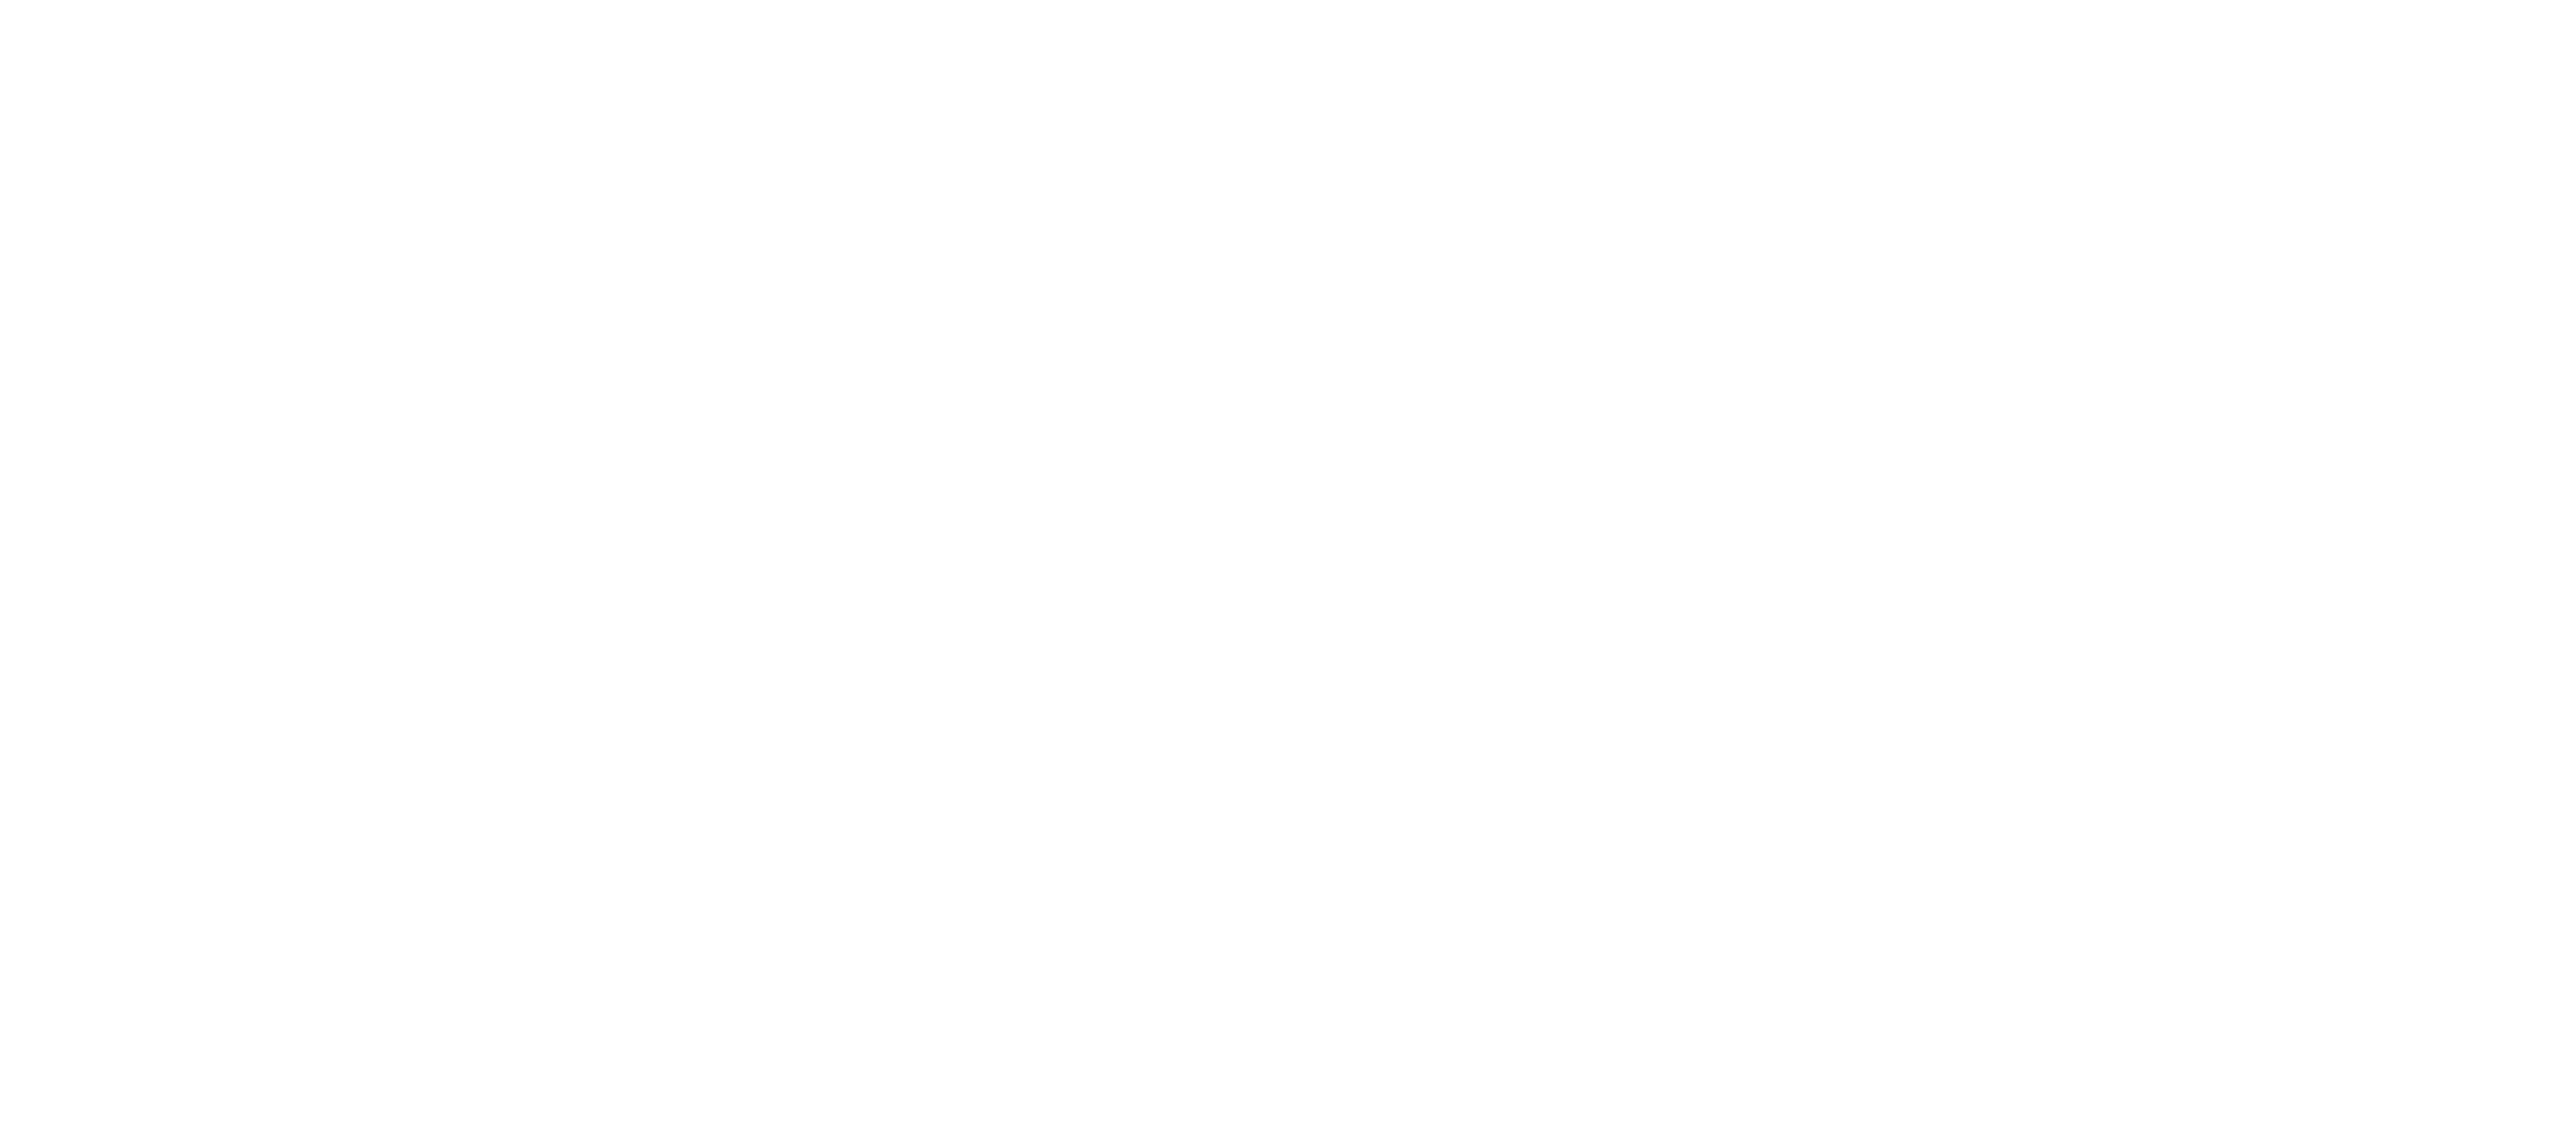 Winzerhof Stauffer Logo